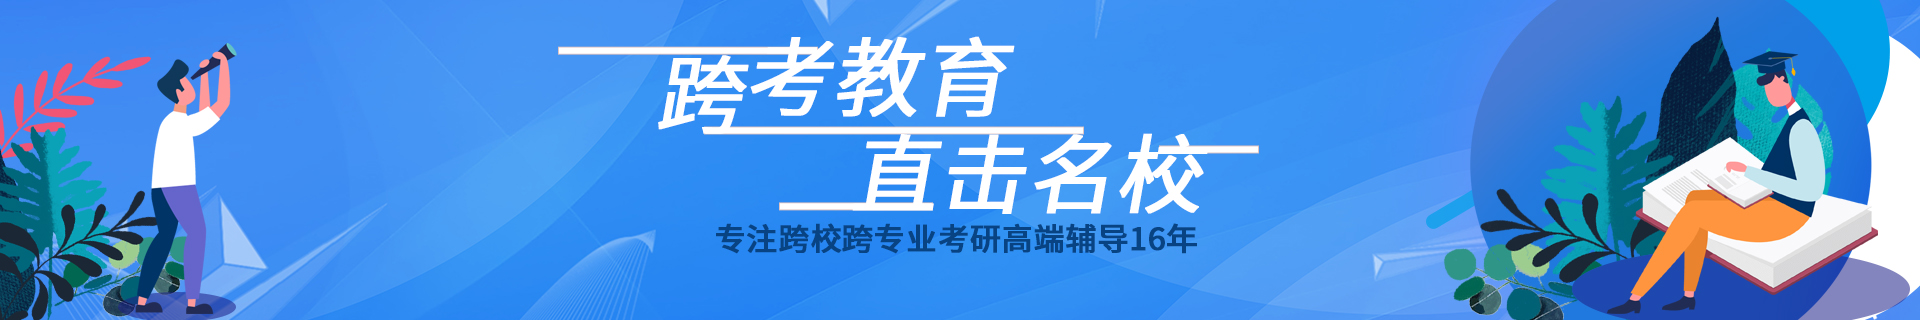 上海松江跨考教育培训机构